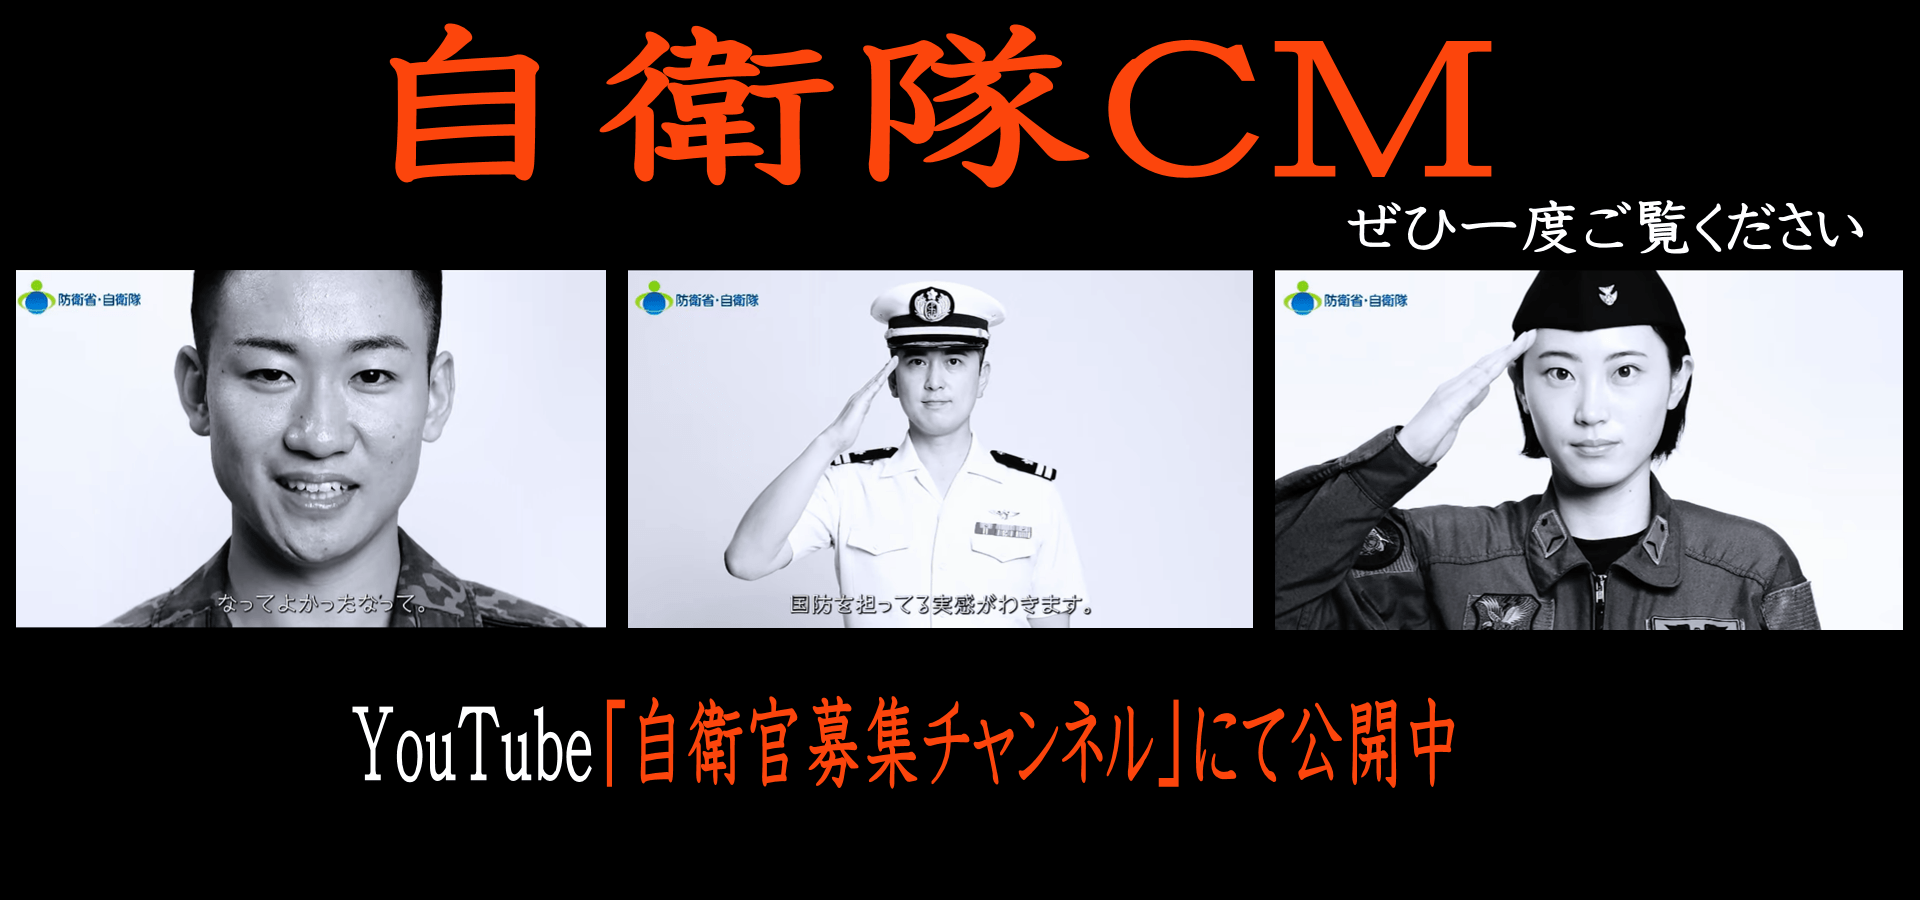 YouTube 防衛省 自衛隊CM 採用 募集 自衛隊山口 